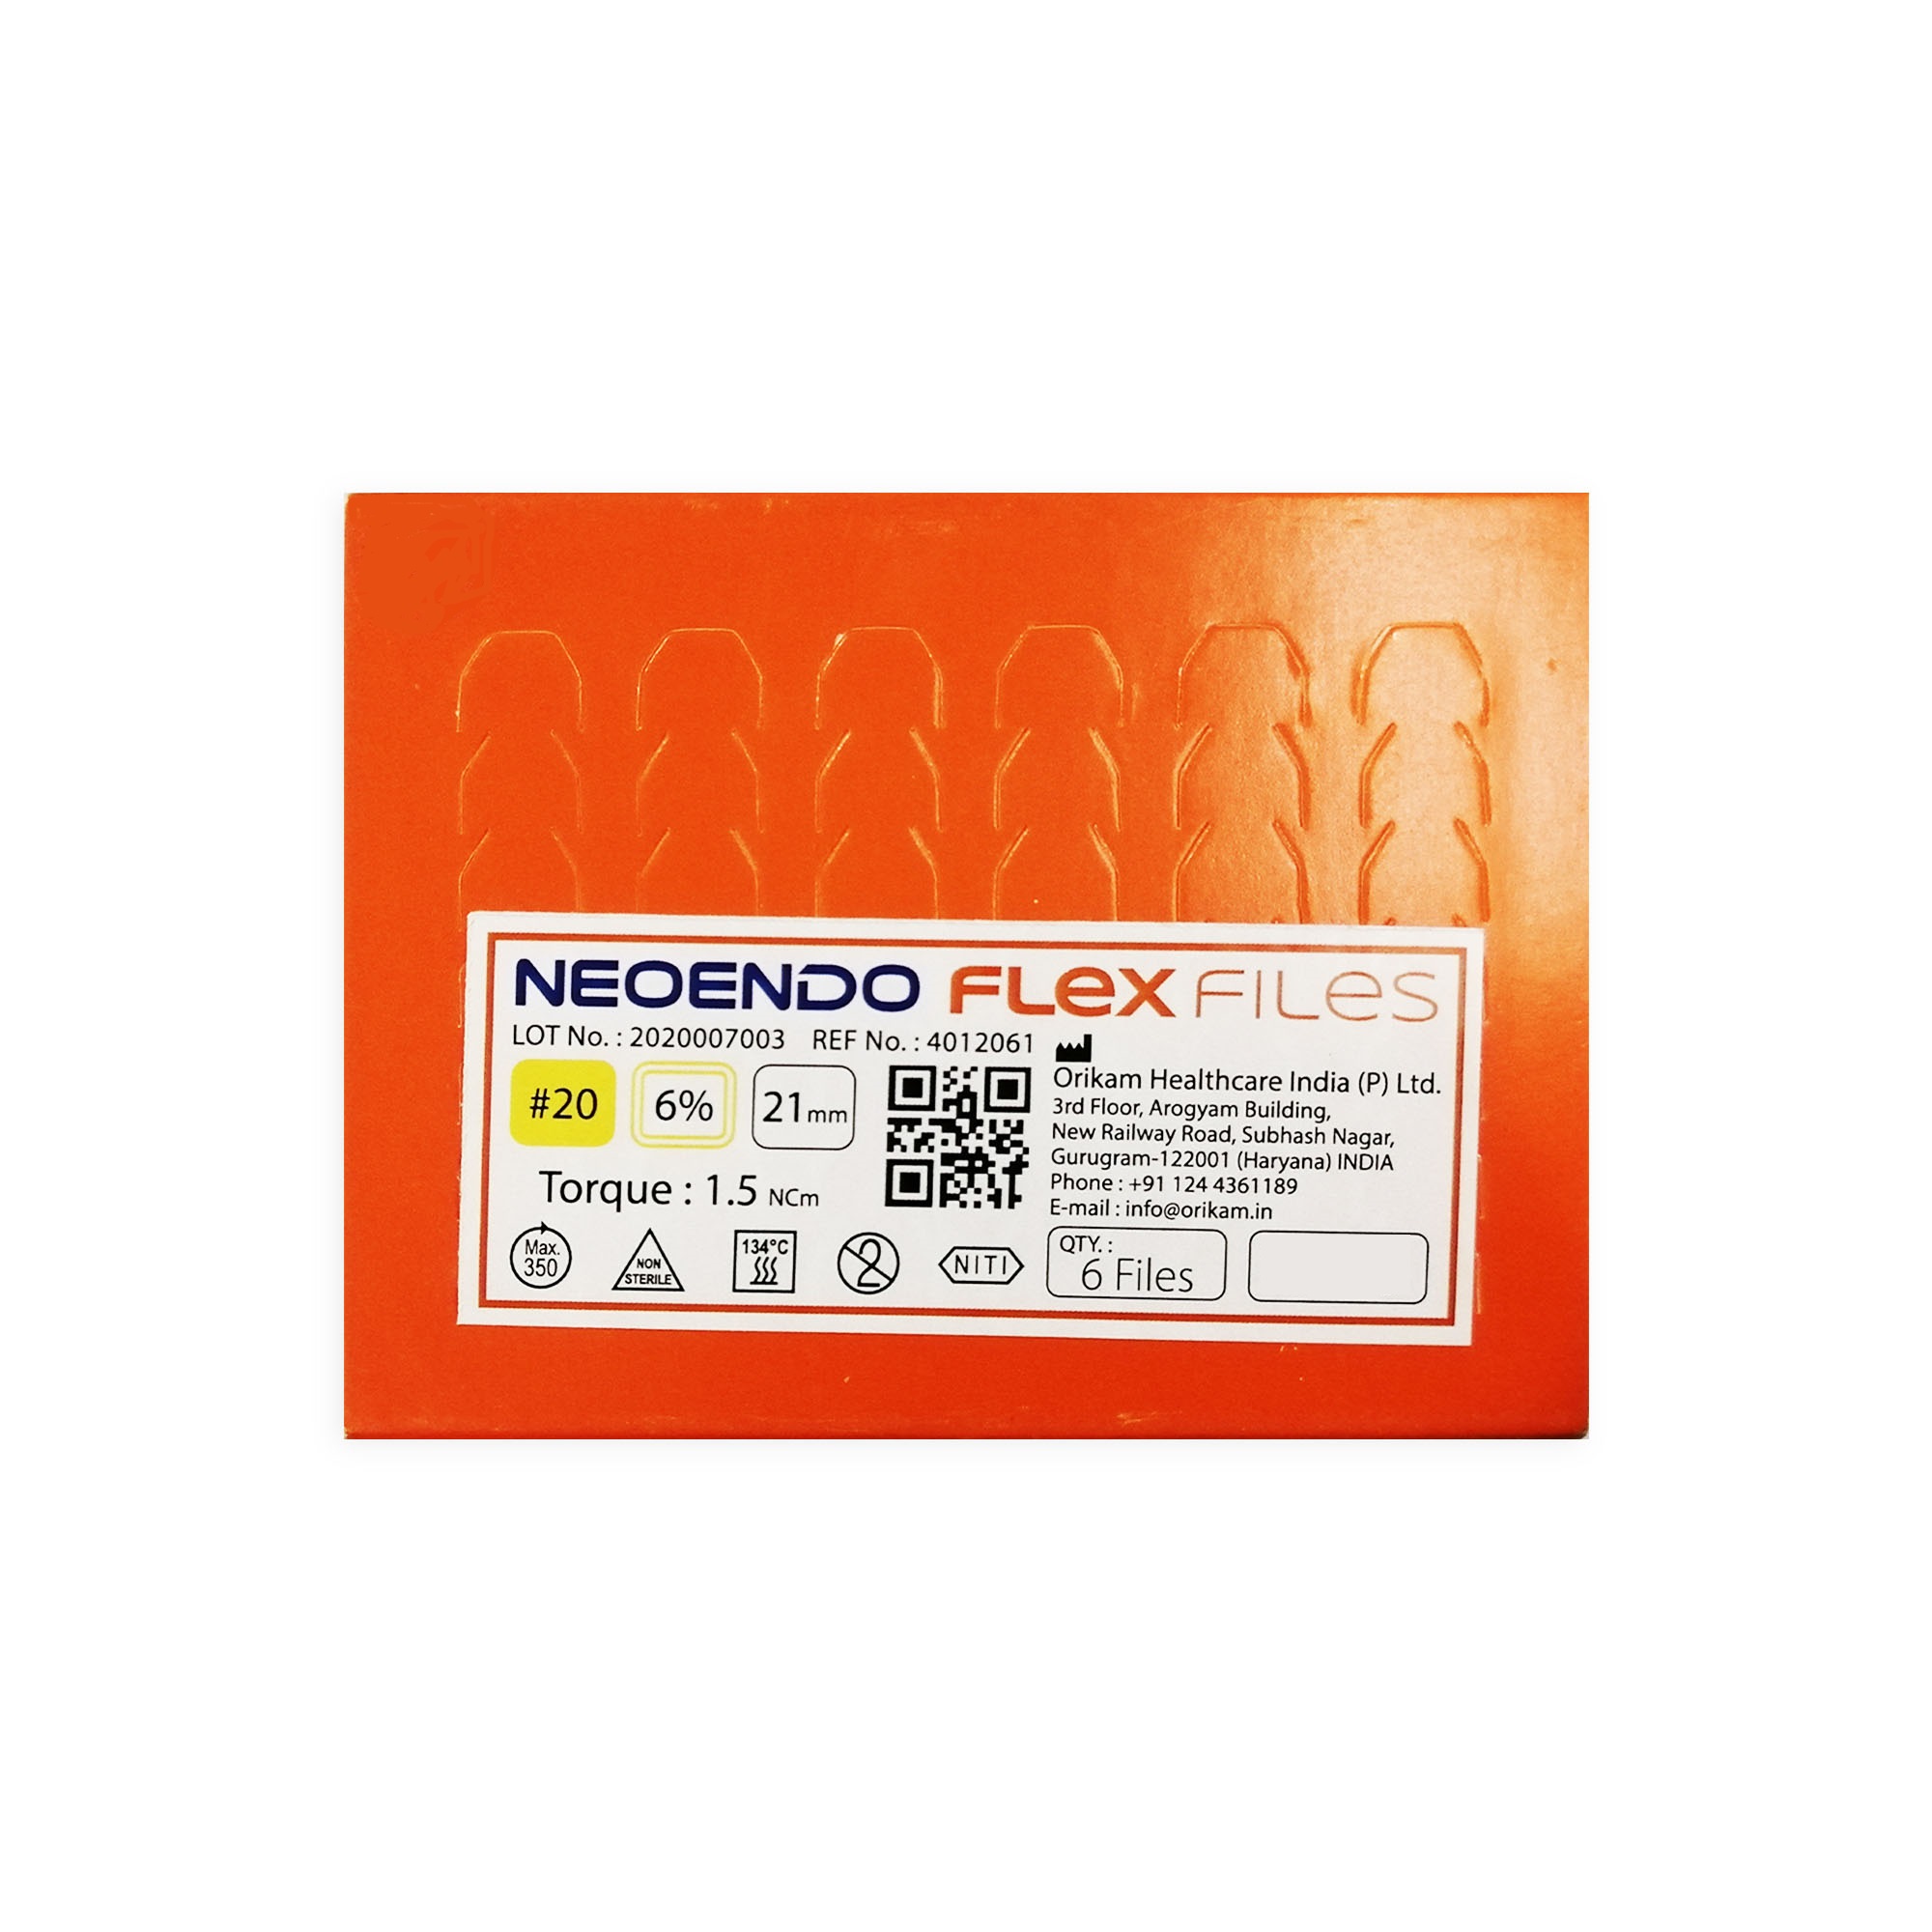 NeoEndo Flex Files 25mm 40/6 Endo Rotary Files